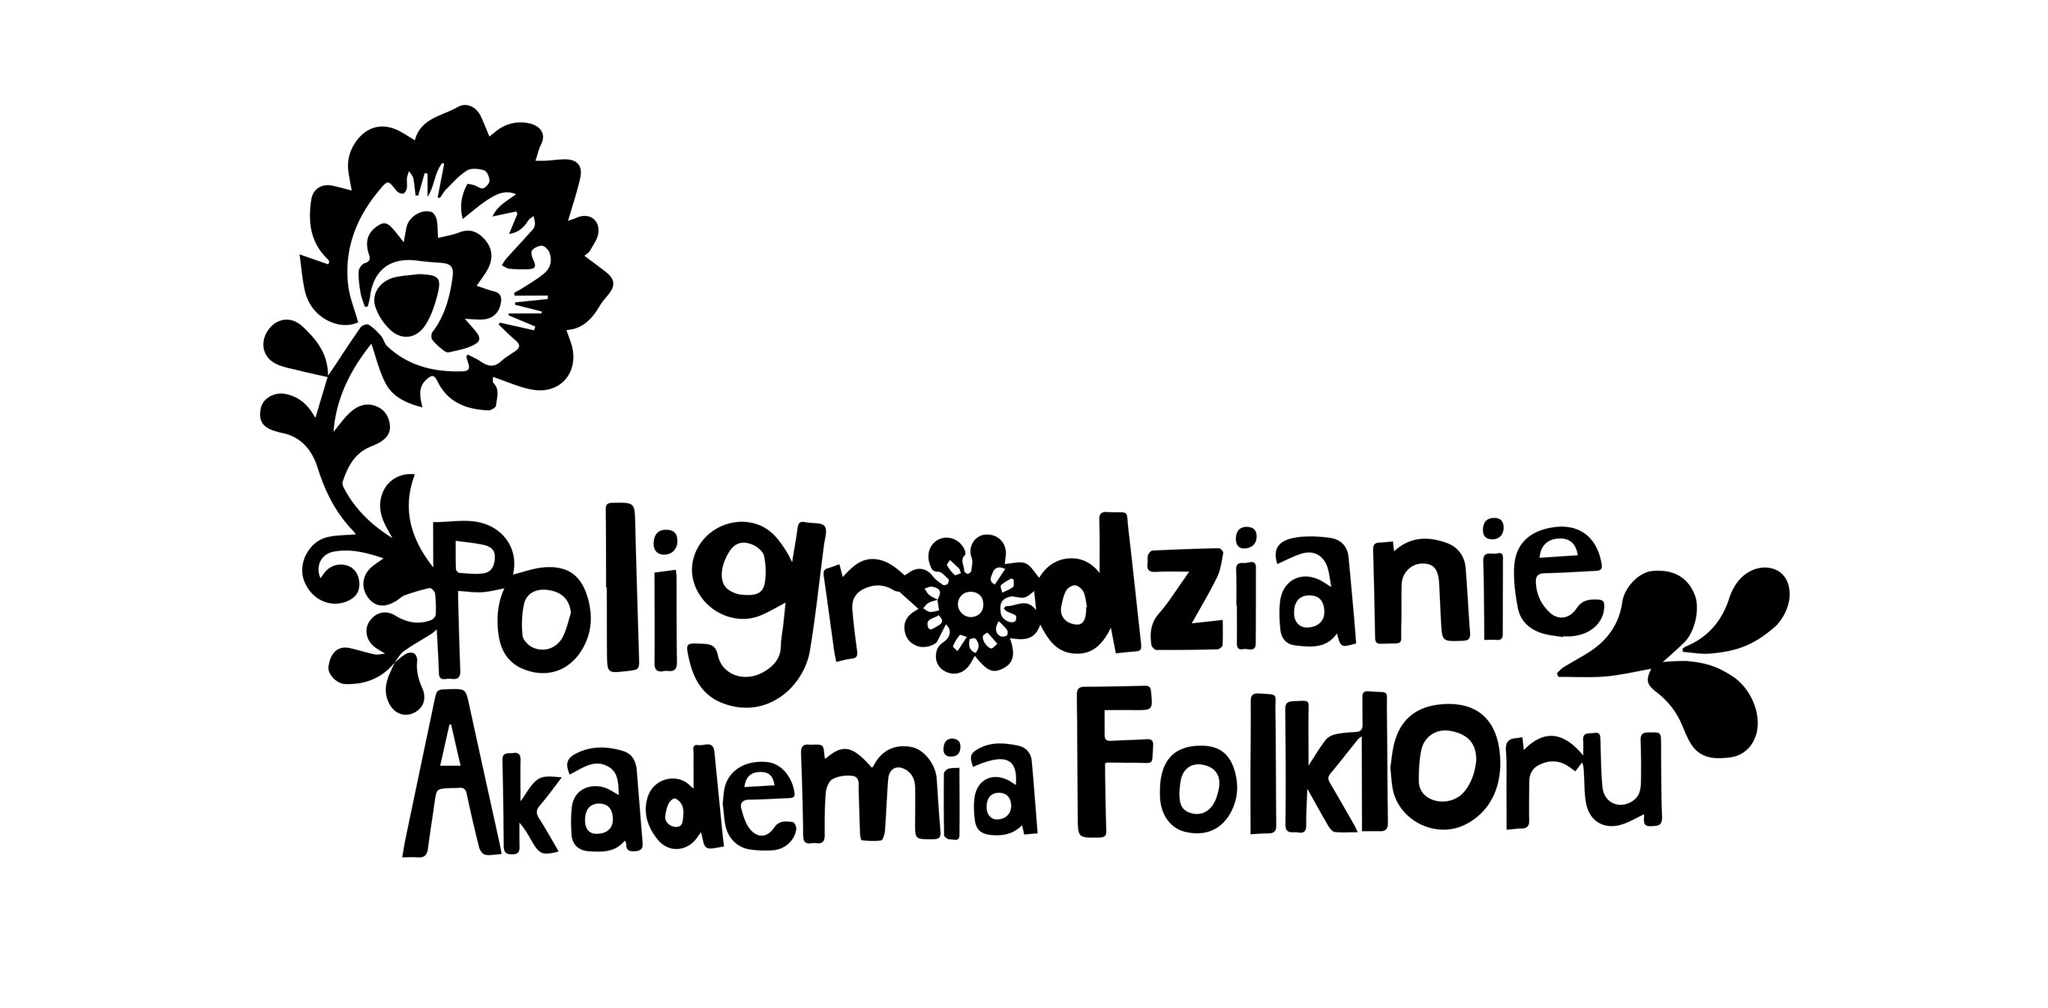 Poligrodzianie Akademia Folkloru